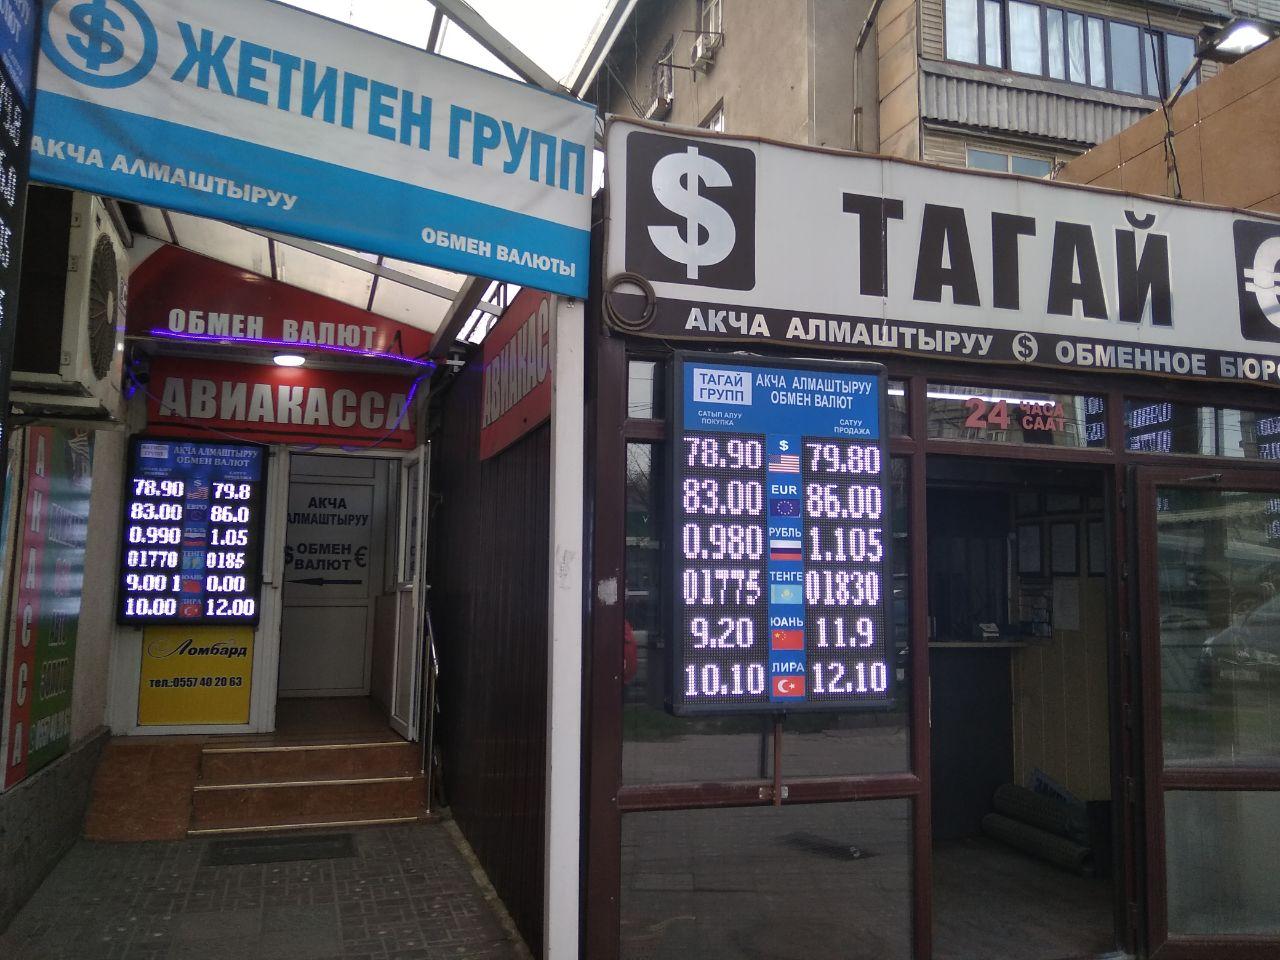 Обмен валюты рубли на сома биткоин график курса за 10 лет